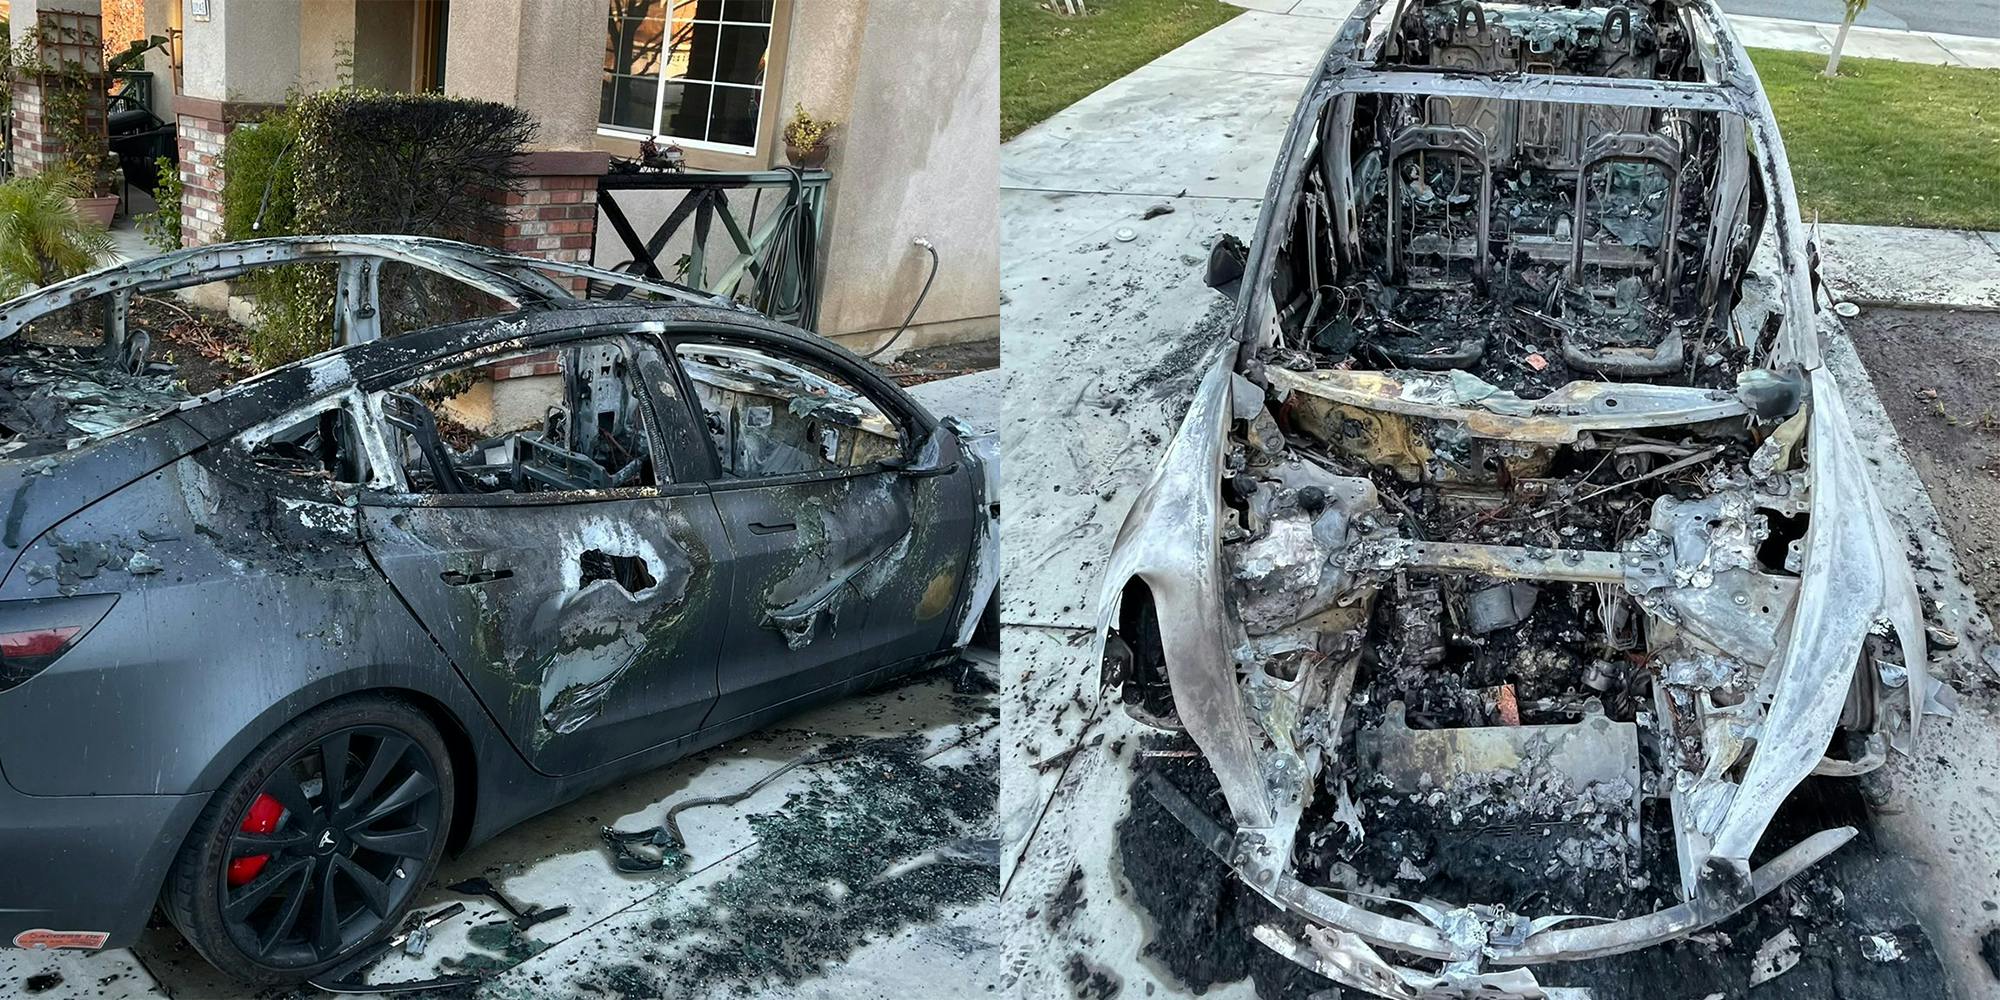 Maakte zich klaar pen zien Tesla Owners Tweets Pictures of Model 3 After Burning in the Driveway